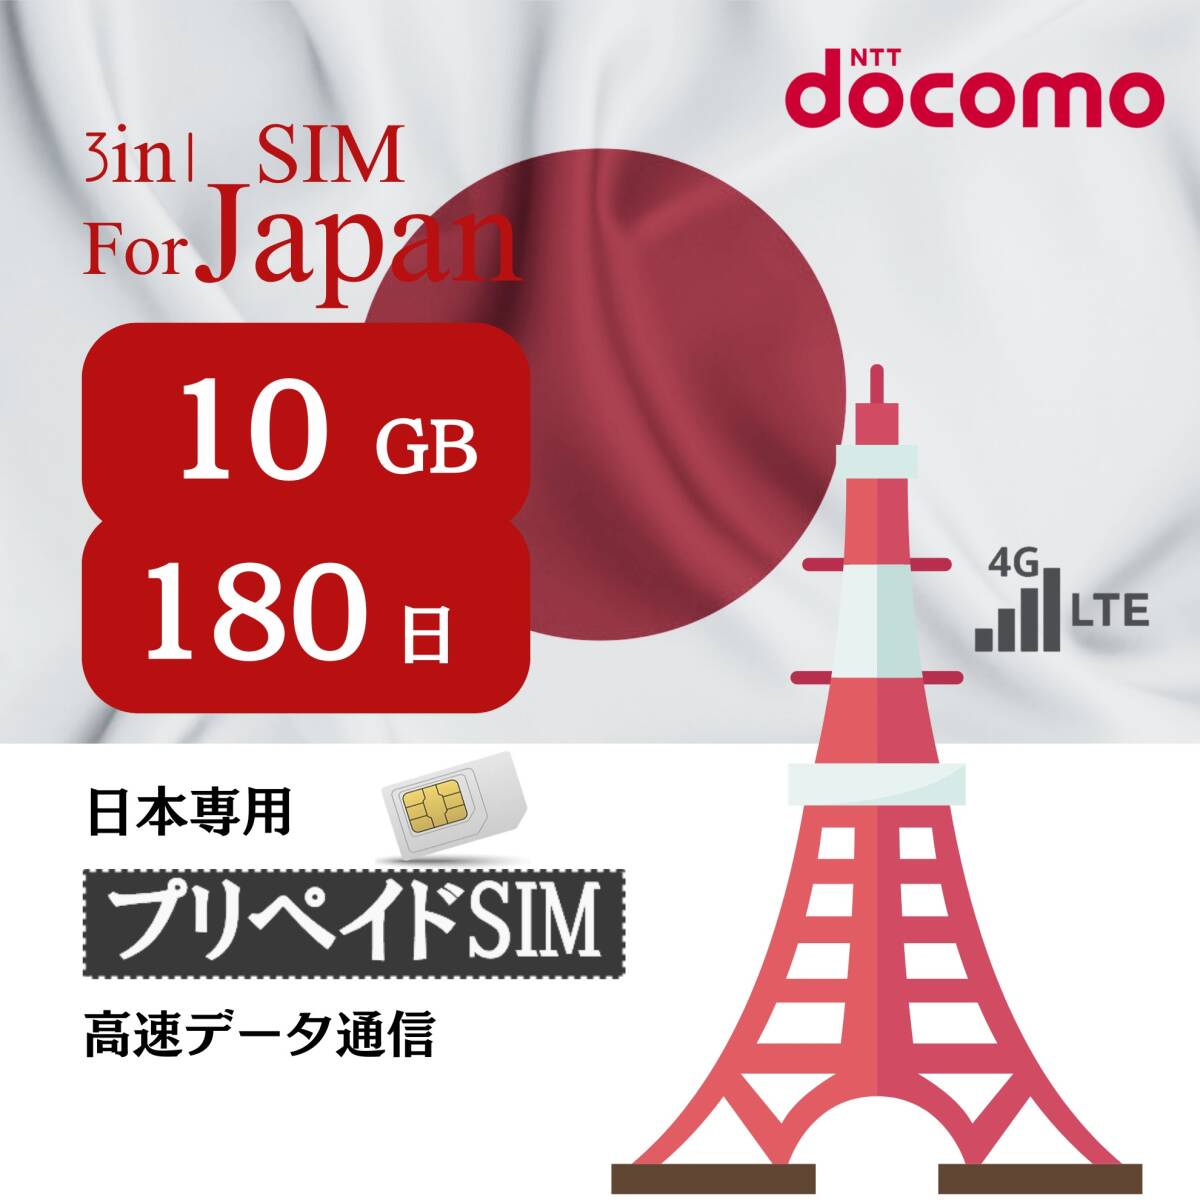 SIM for Japan 日本国内用 180日間 10GB (標準/マイクロ/ナノ)3-in-1 docomo データ通信専用 4G-LTE SIMカード/NTTドコモ 通信網の画像1